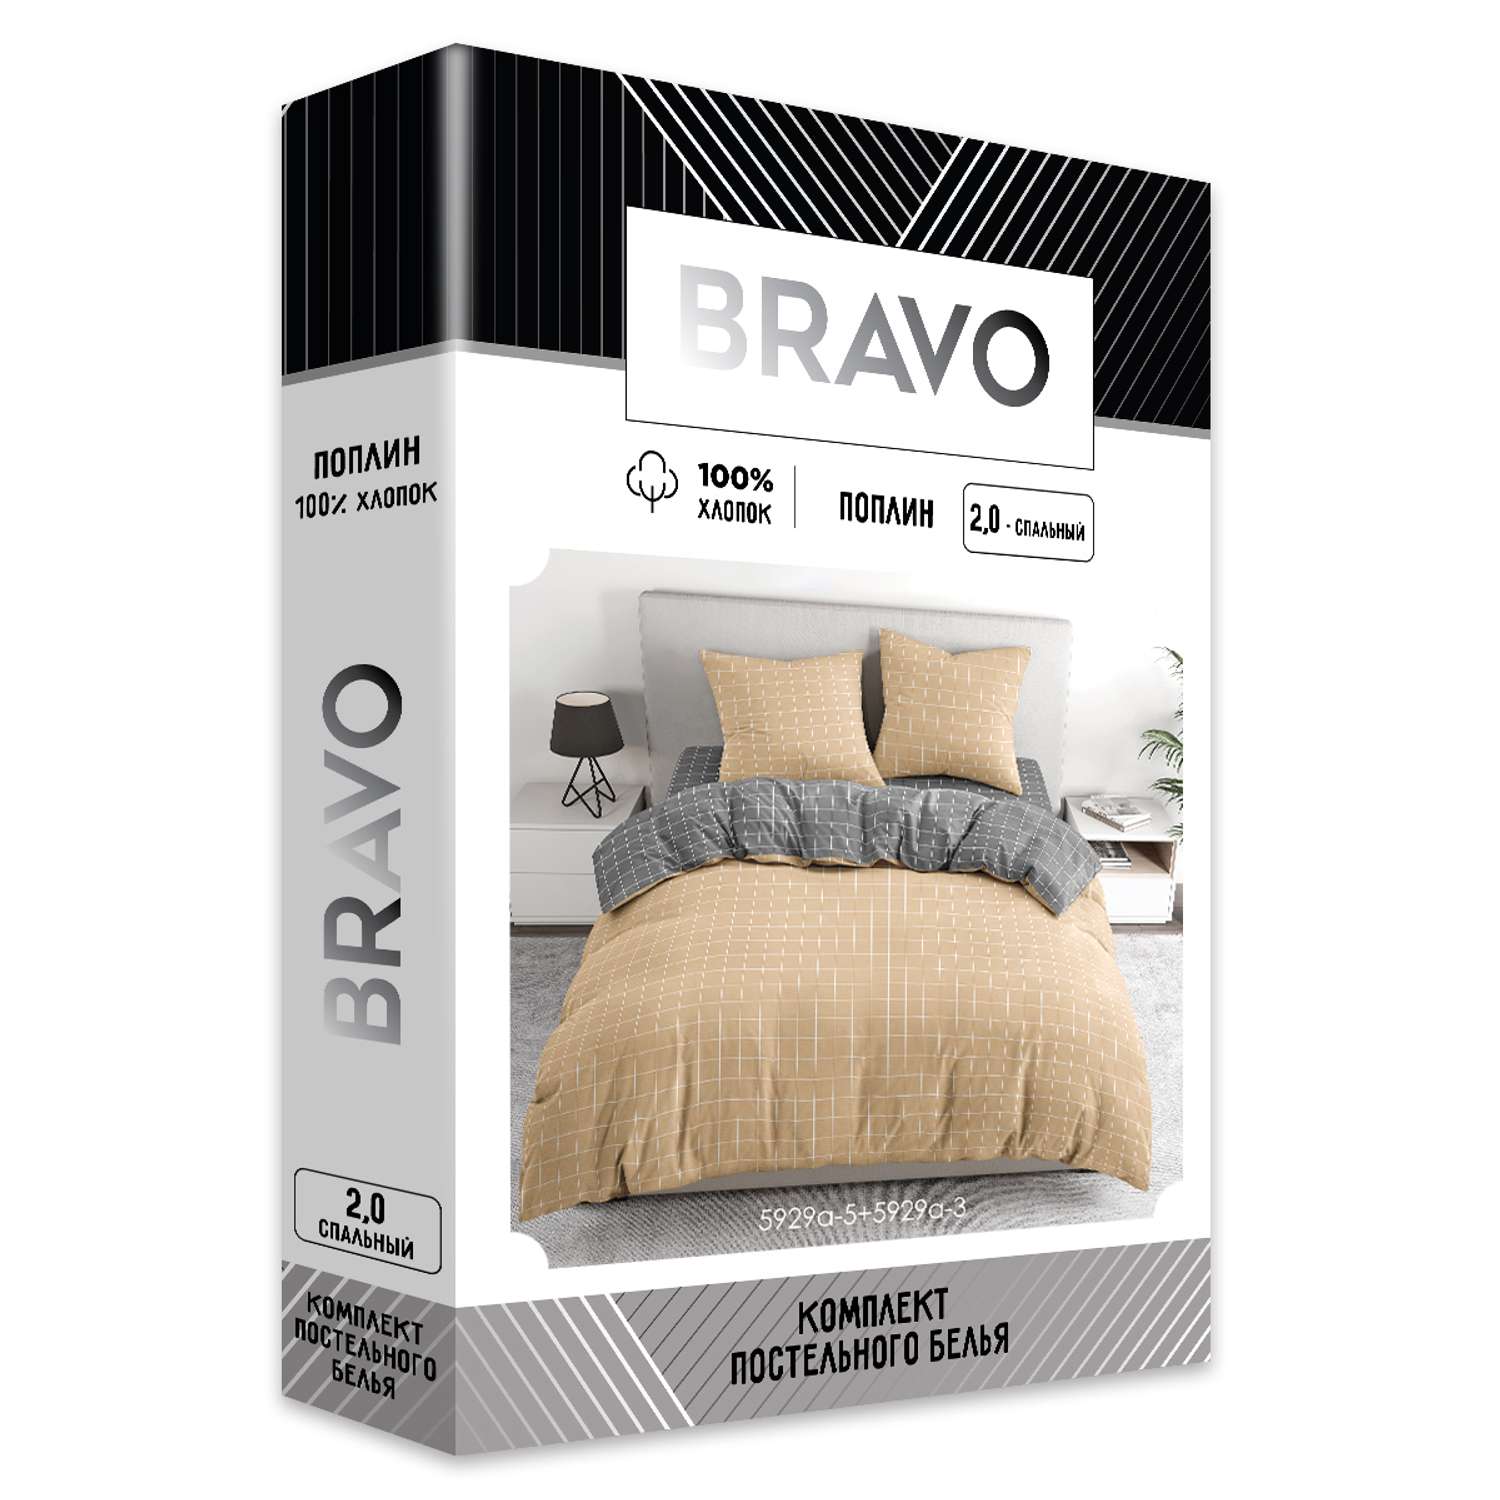 Комплект постельного белья BRAVO Клетка 2-спальный макси наволочки 70х70 рис.5929а-5+5929а-3 бежевый - фото 8